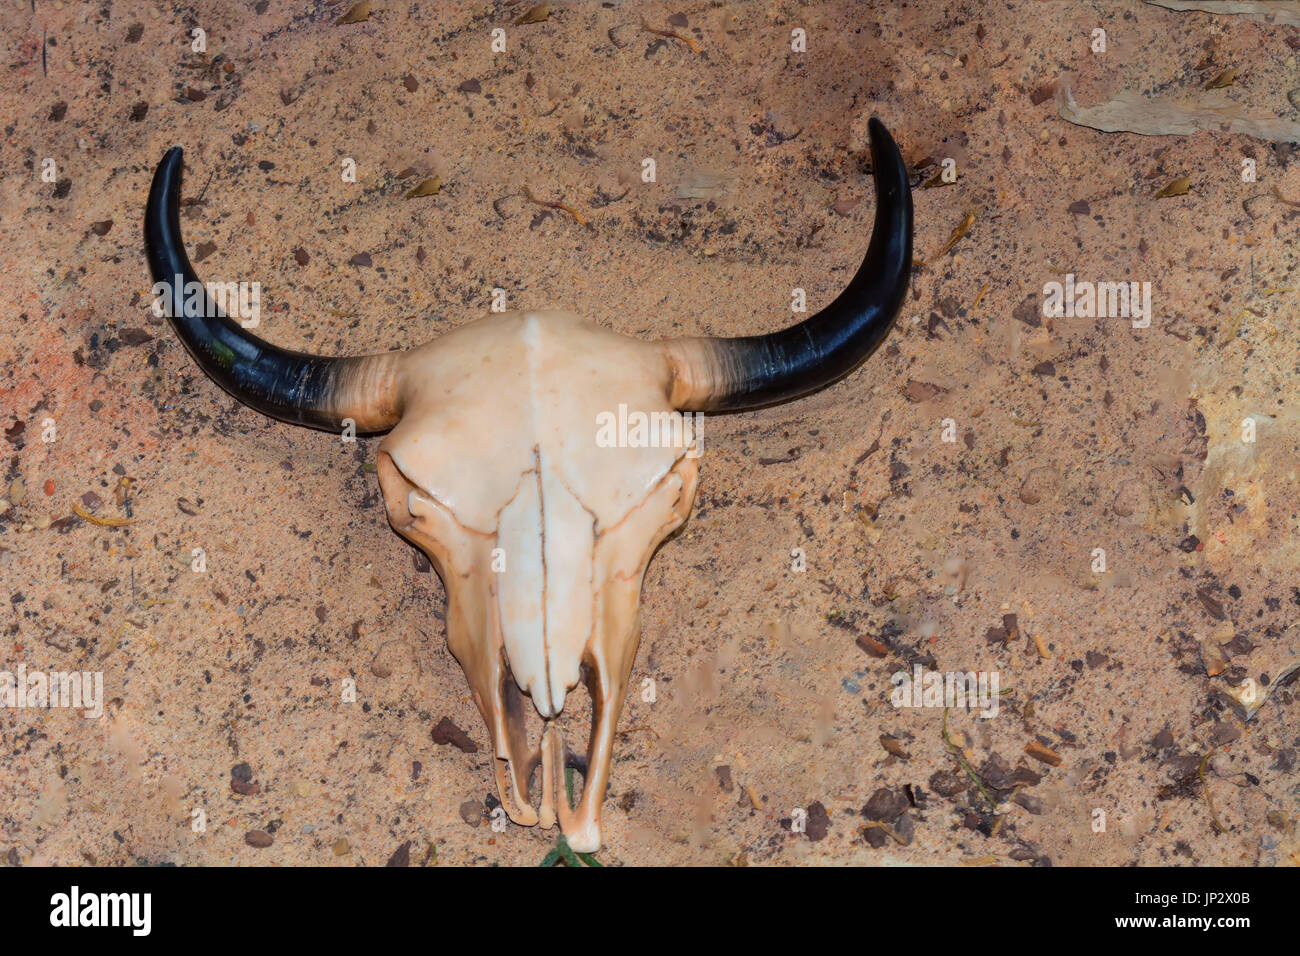 Kuh Schädel mit Hörnern, Rinder Stierkopf auf trockenen Sand in der Wüste  Stockfotografie - Alamy